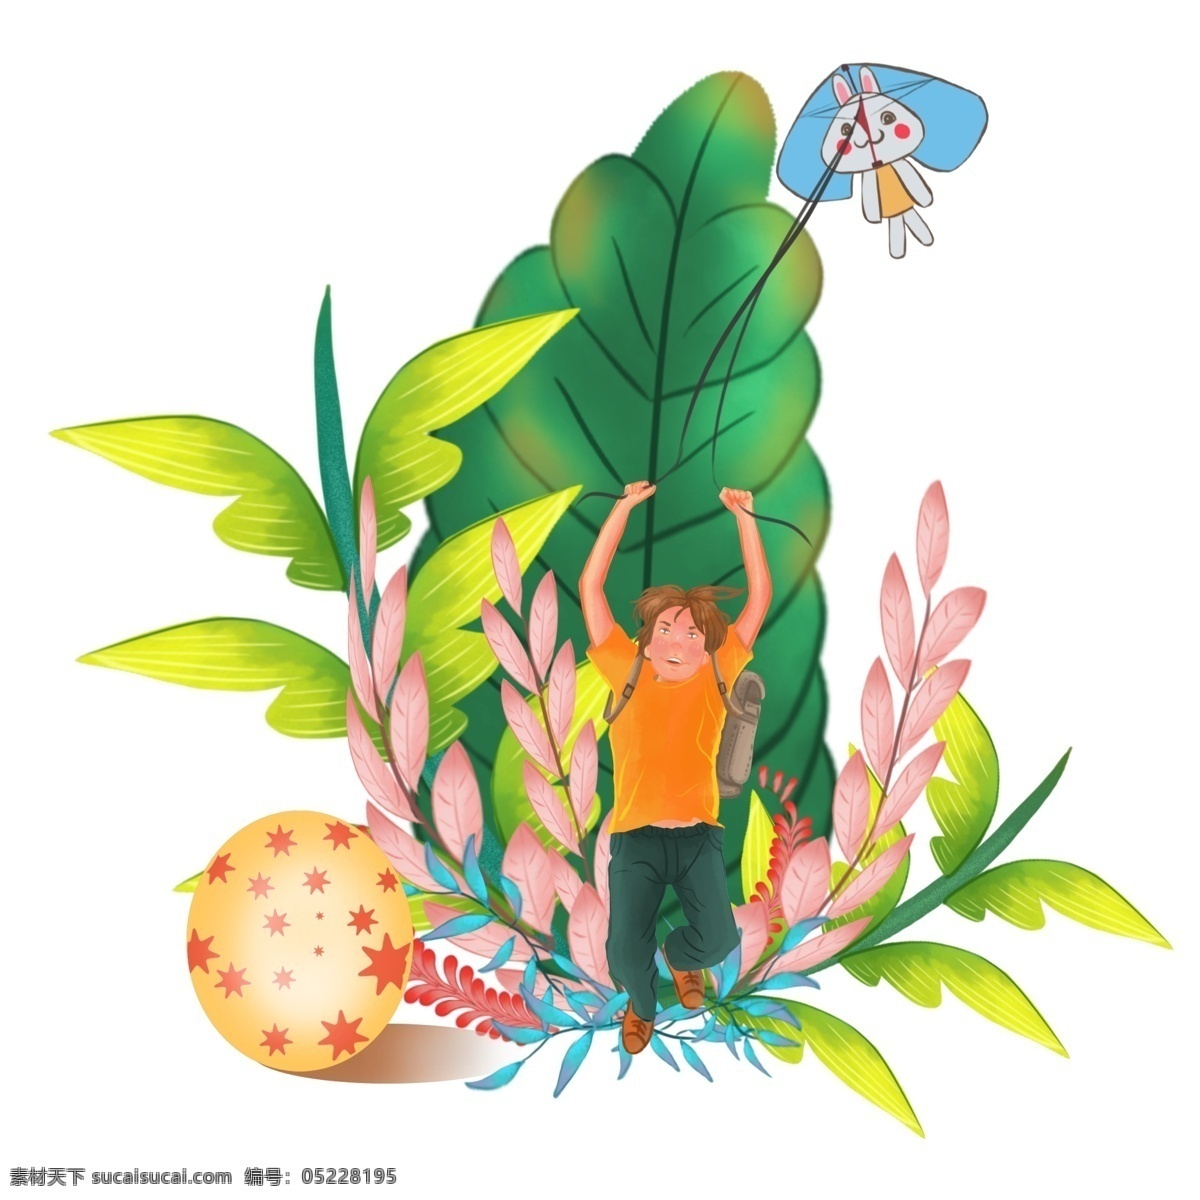 商用 高清 手绘 可爱 儿童 找 彩蛋 可商用 植物 风筝 卡通人物 小清新